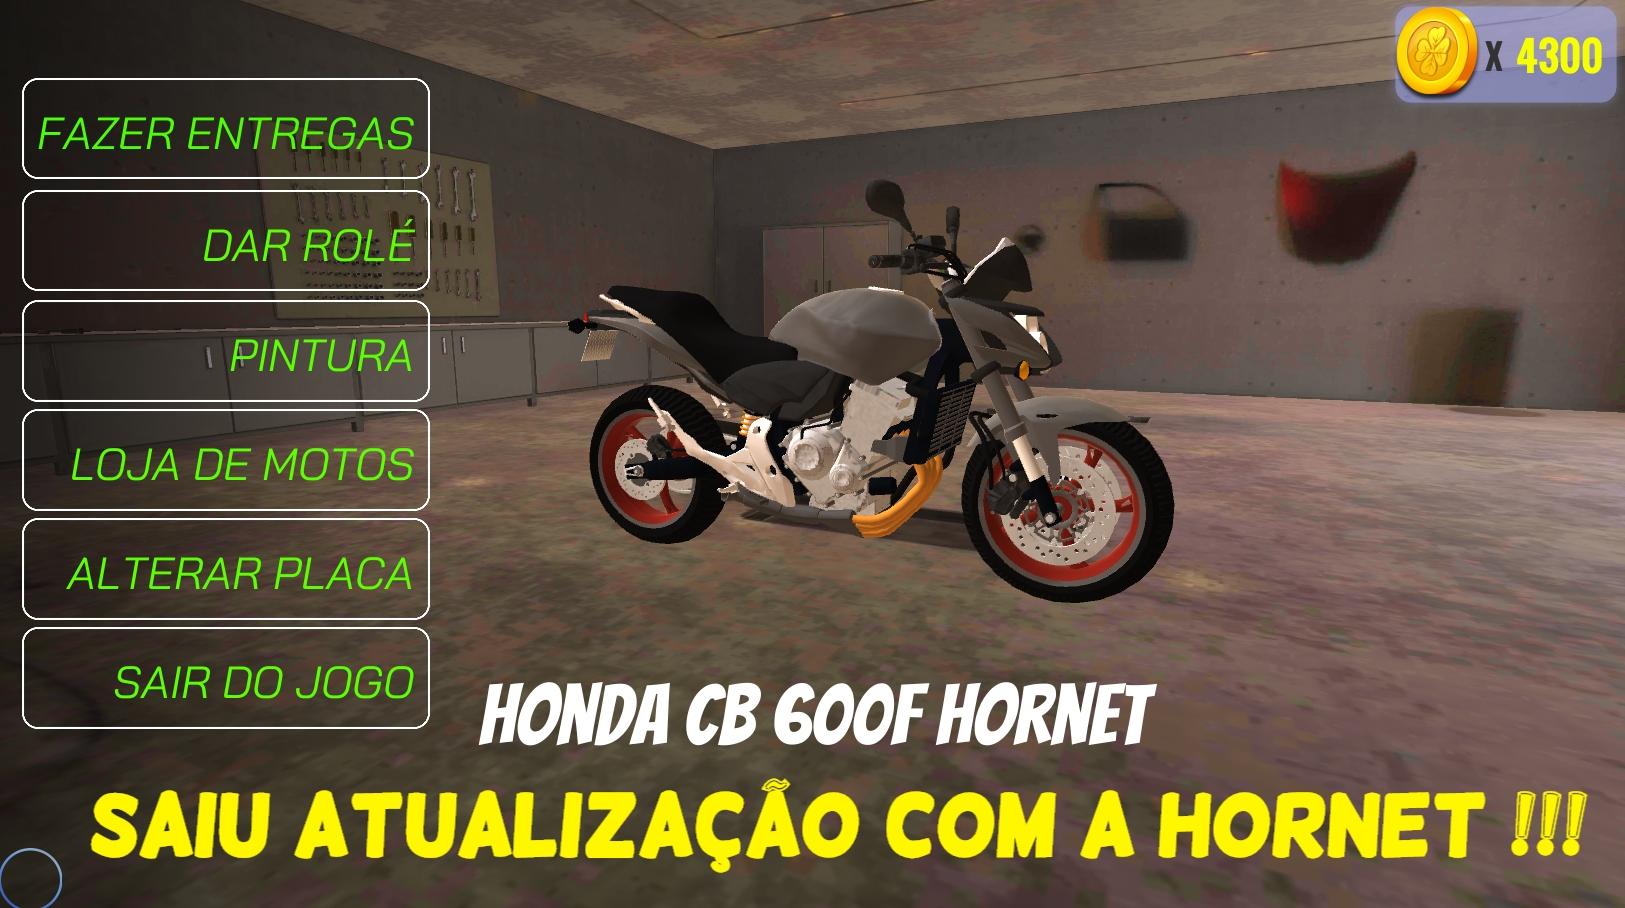 Baixe Atualização Moto Vlog Brasil no PC